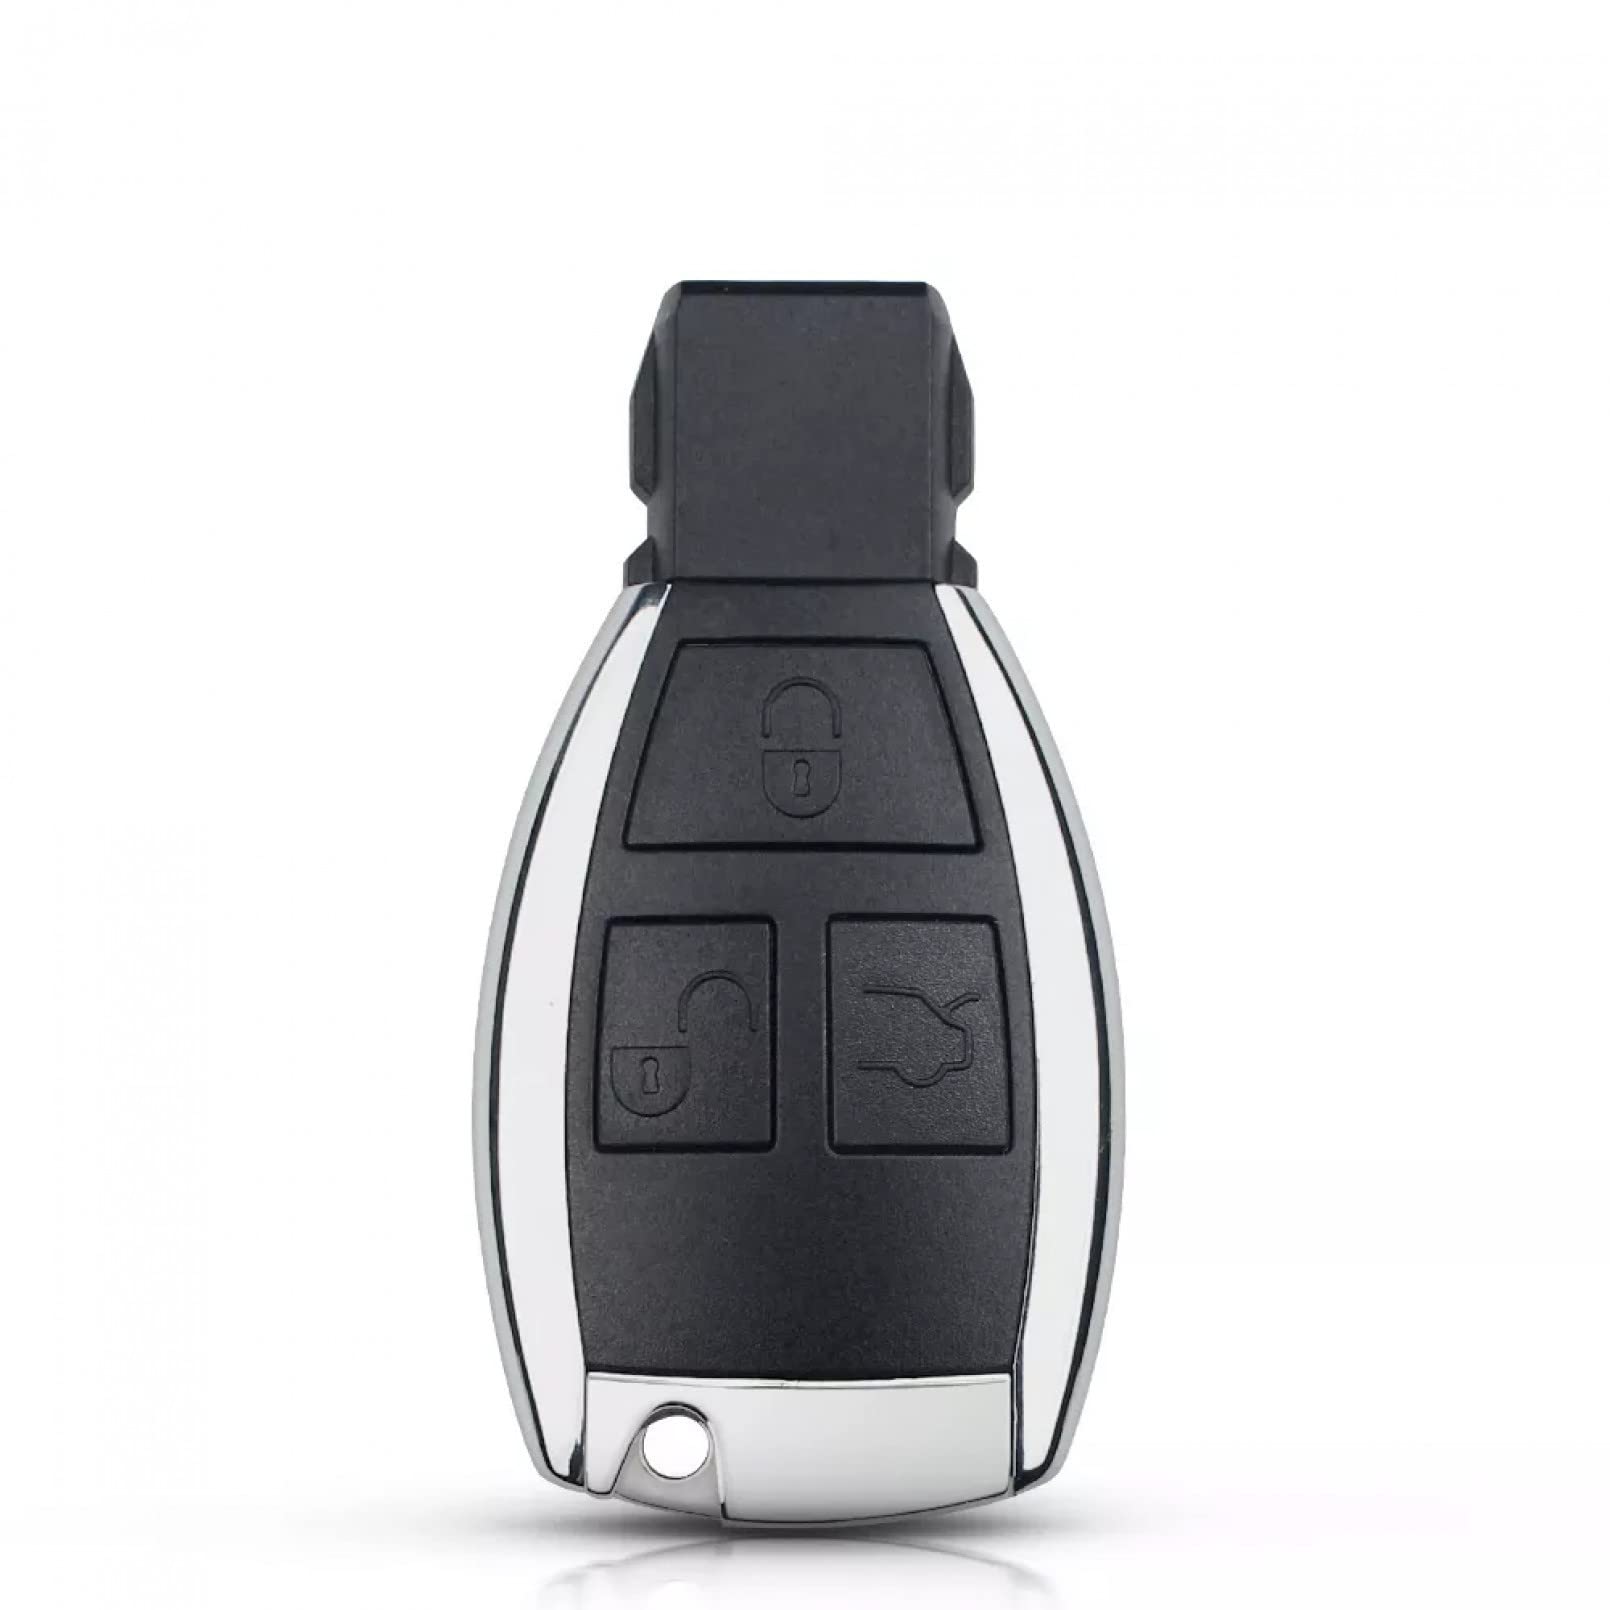 3 Tasten Modifizierte Autoschlüssel Gehäuse der Fernbedienung Ersatzzubehör Shell Case Cover Fob für Mercedes Benz BCE ML S CLK CL von KSHSAA